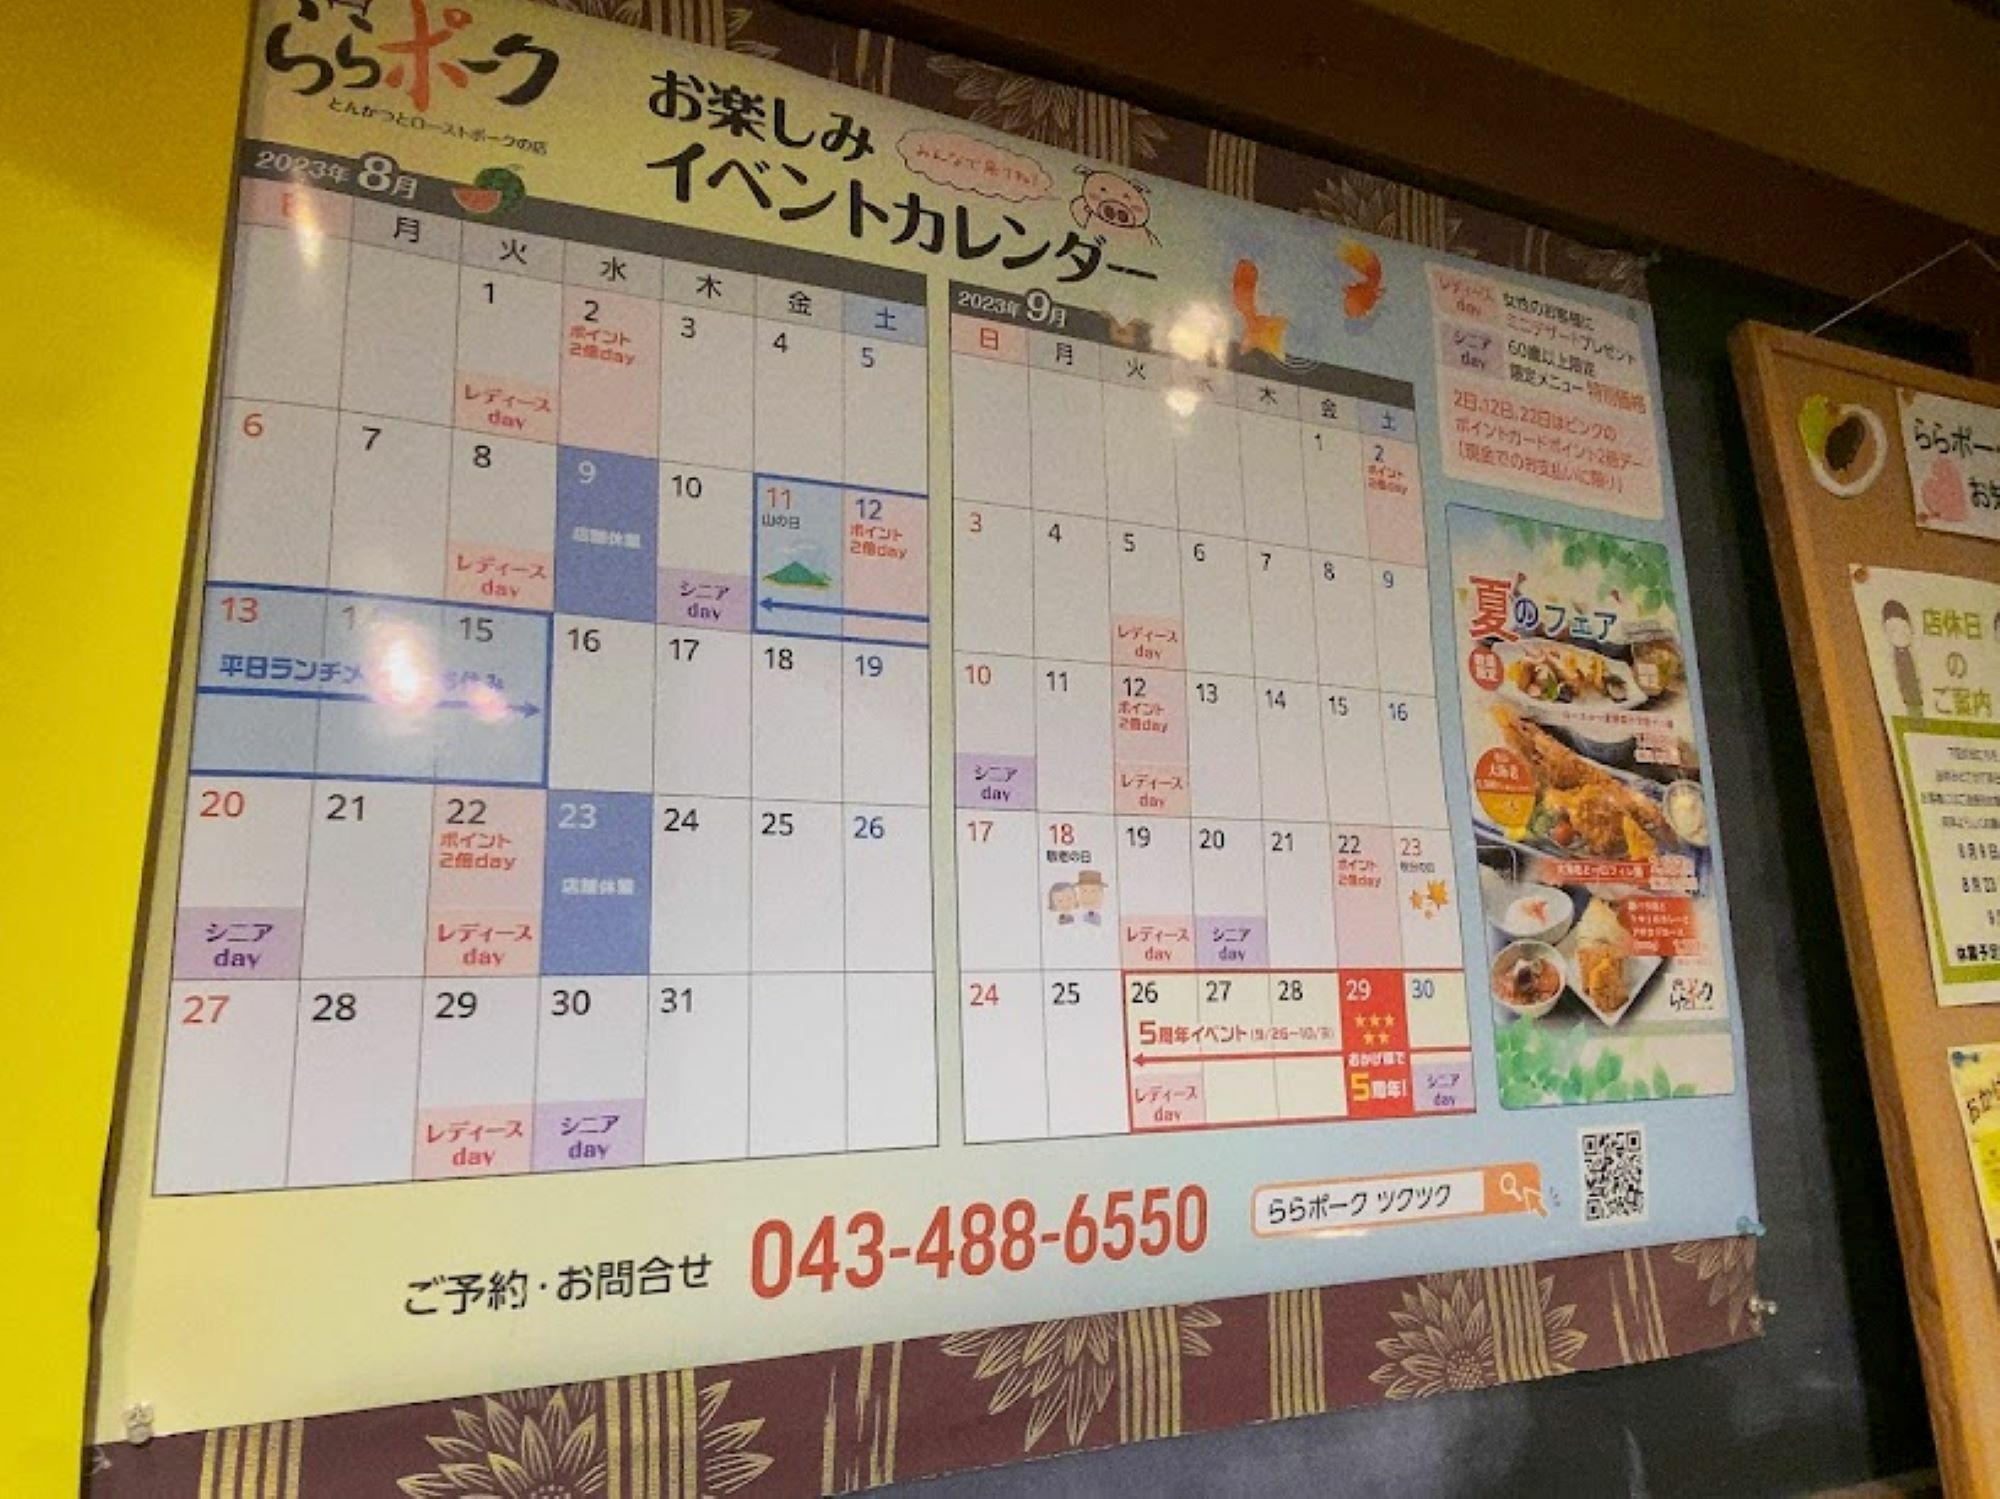 お店の入口に掲示されたお楽しみイベントカレンダー。